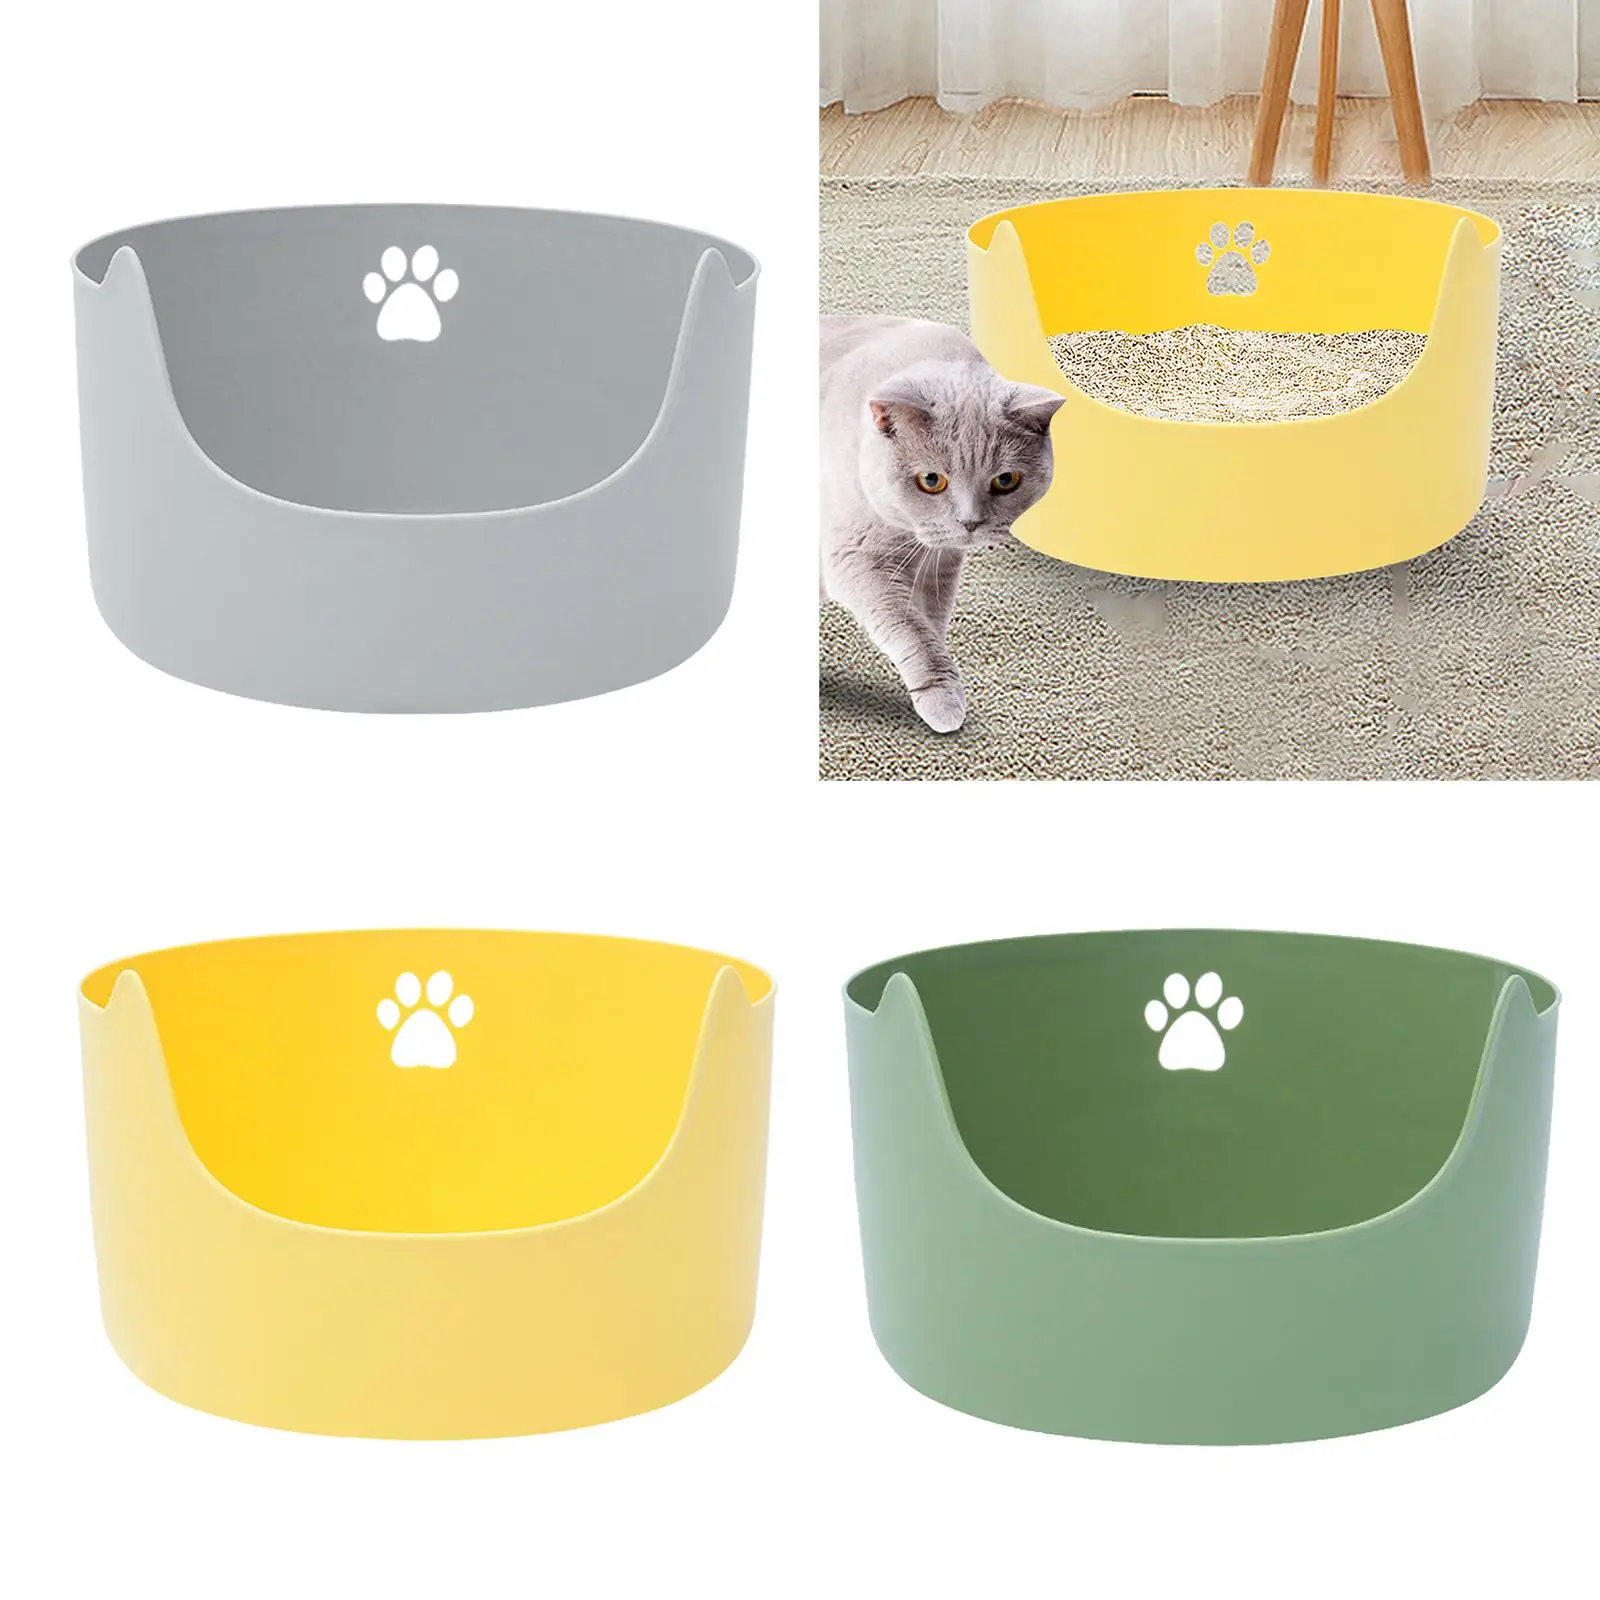 Cat Litter Box Open Top Pet Litter Tray for Small Medium Cats Pets Supplies